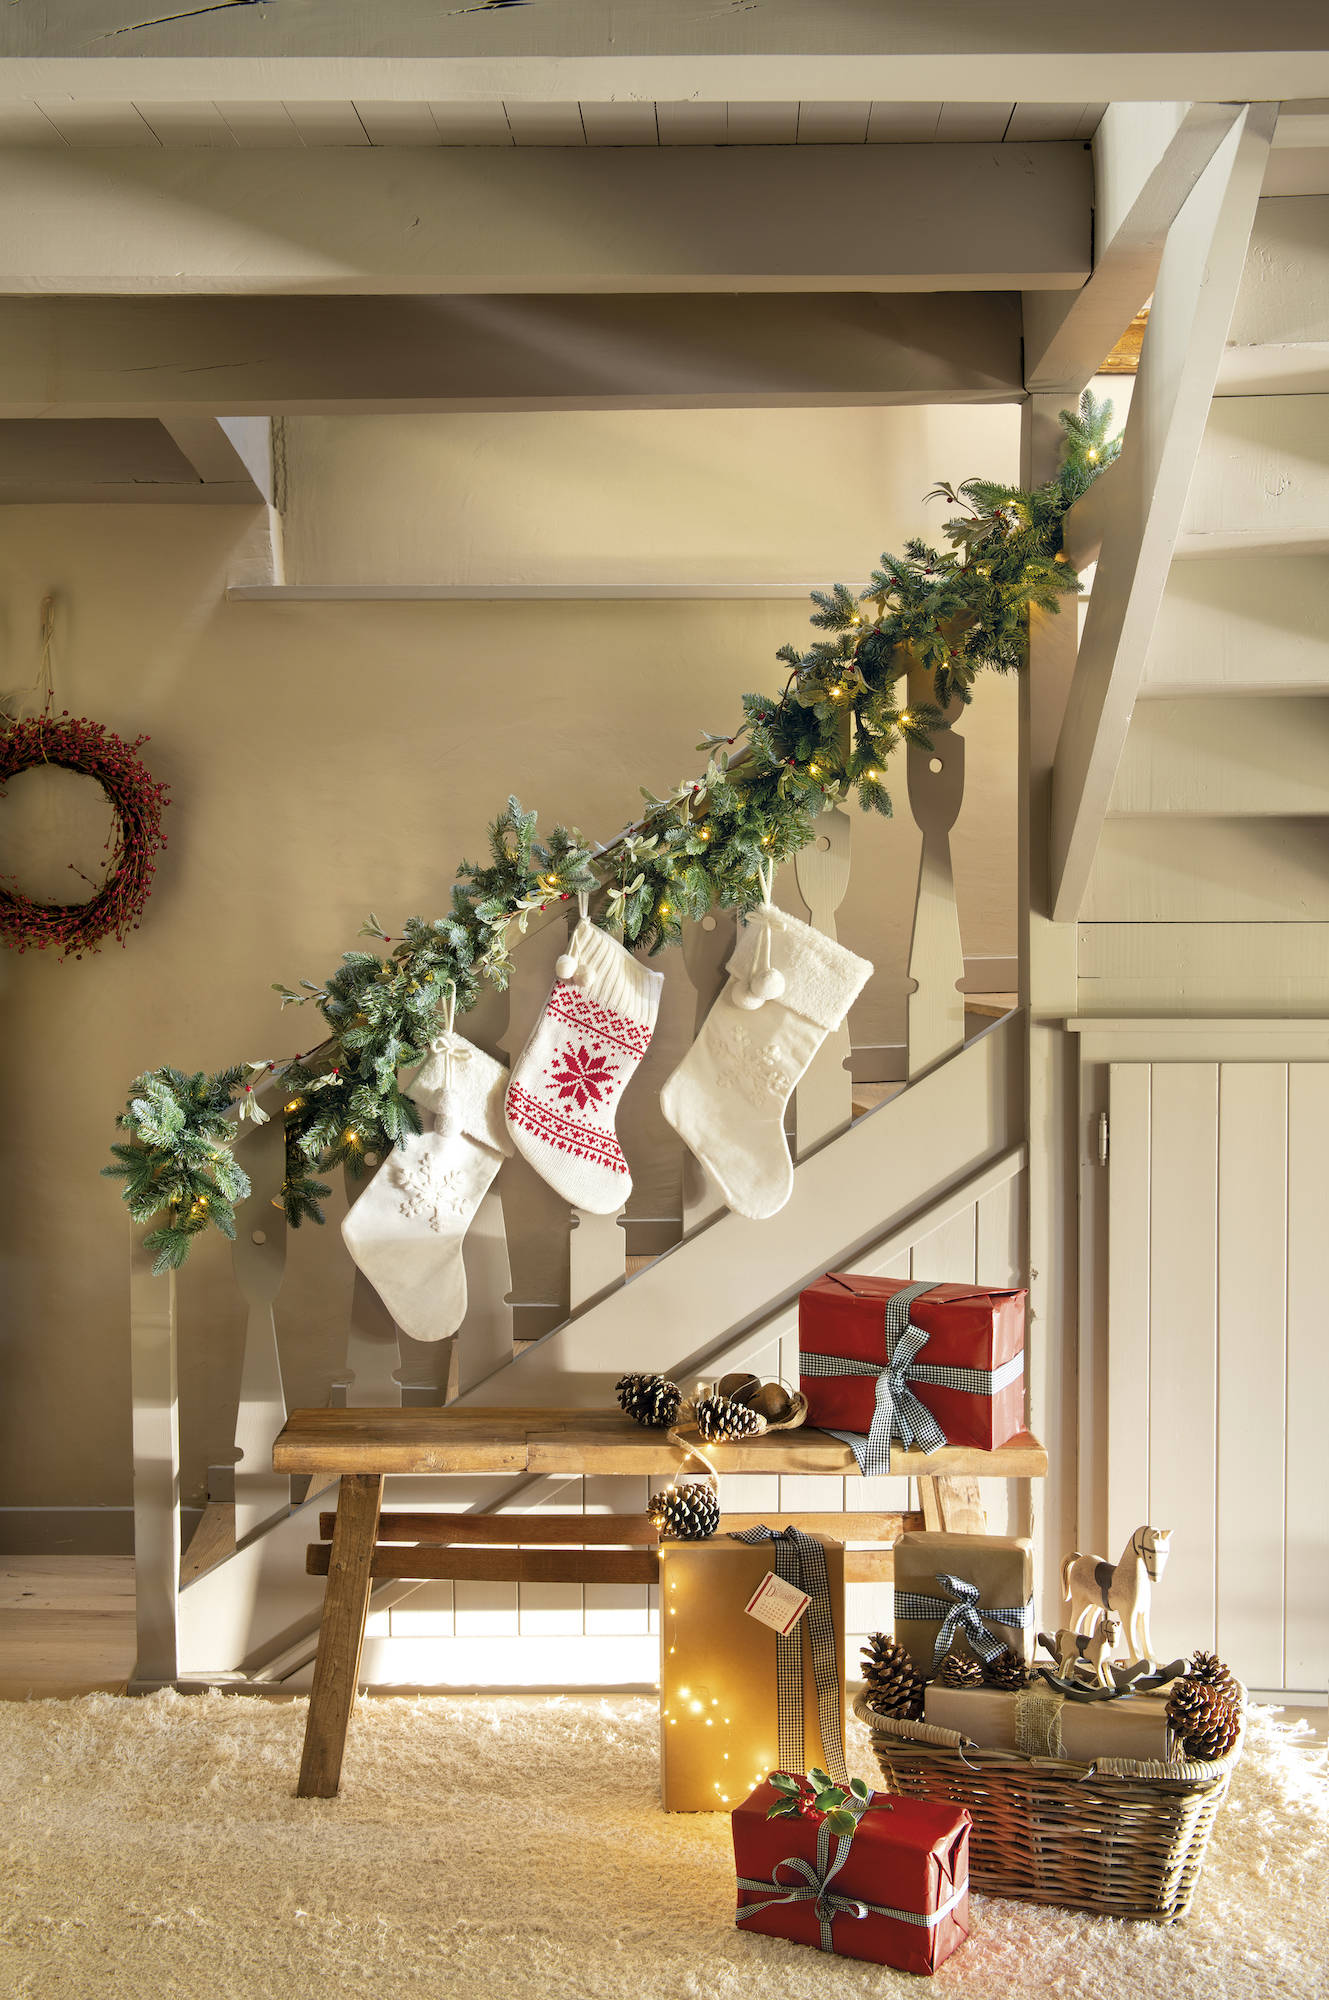 Escalera decorada por Navidad con calcetines y guirnaldas